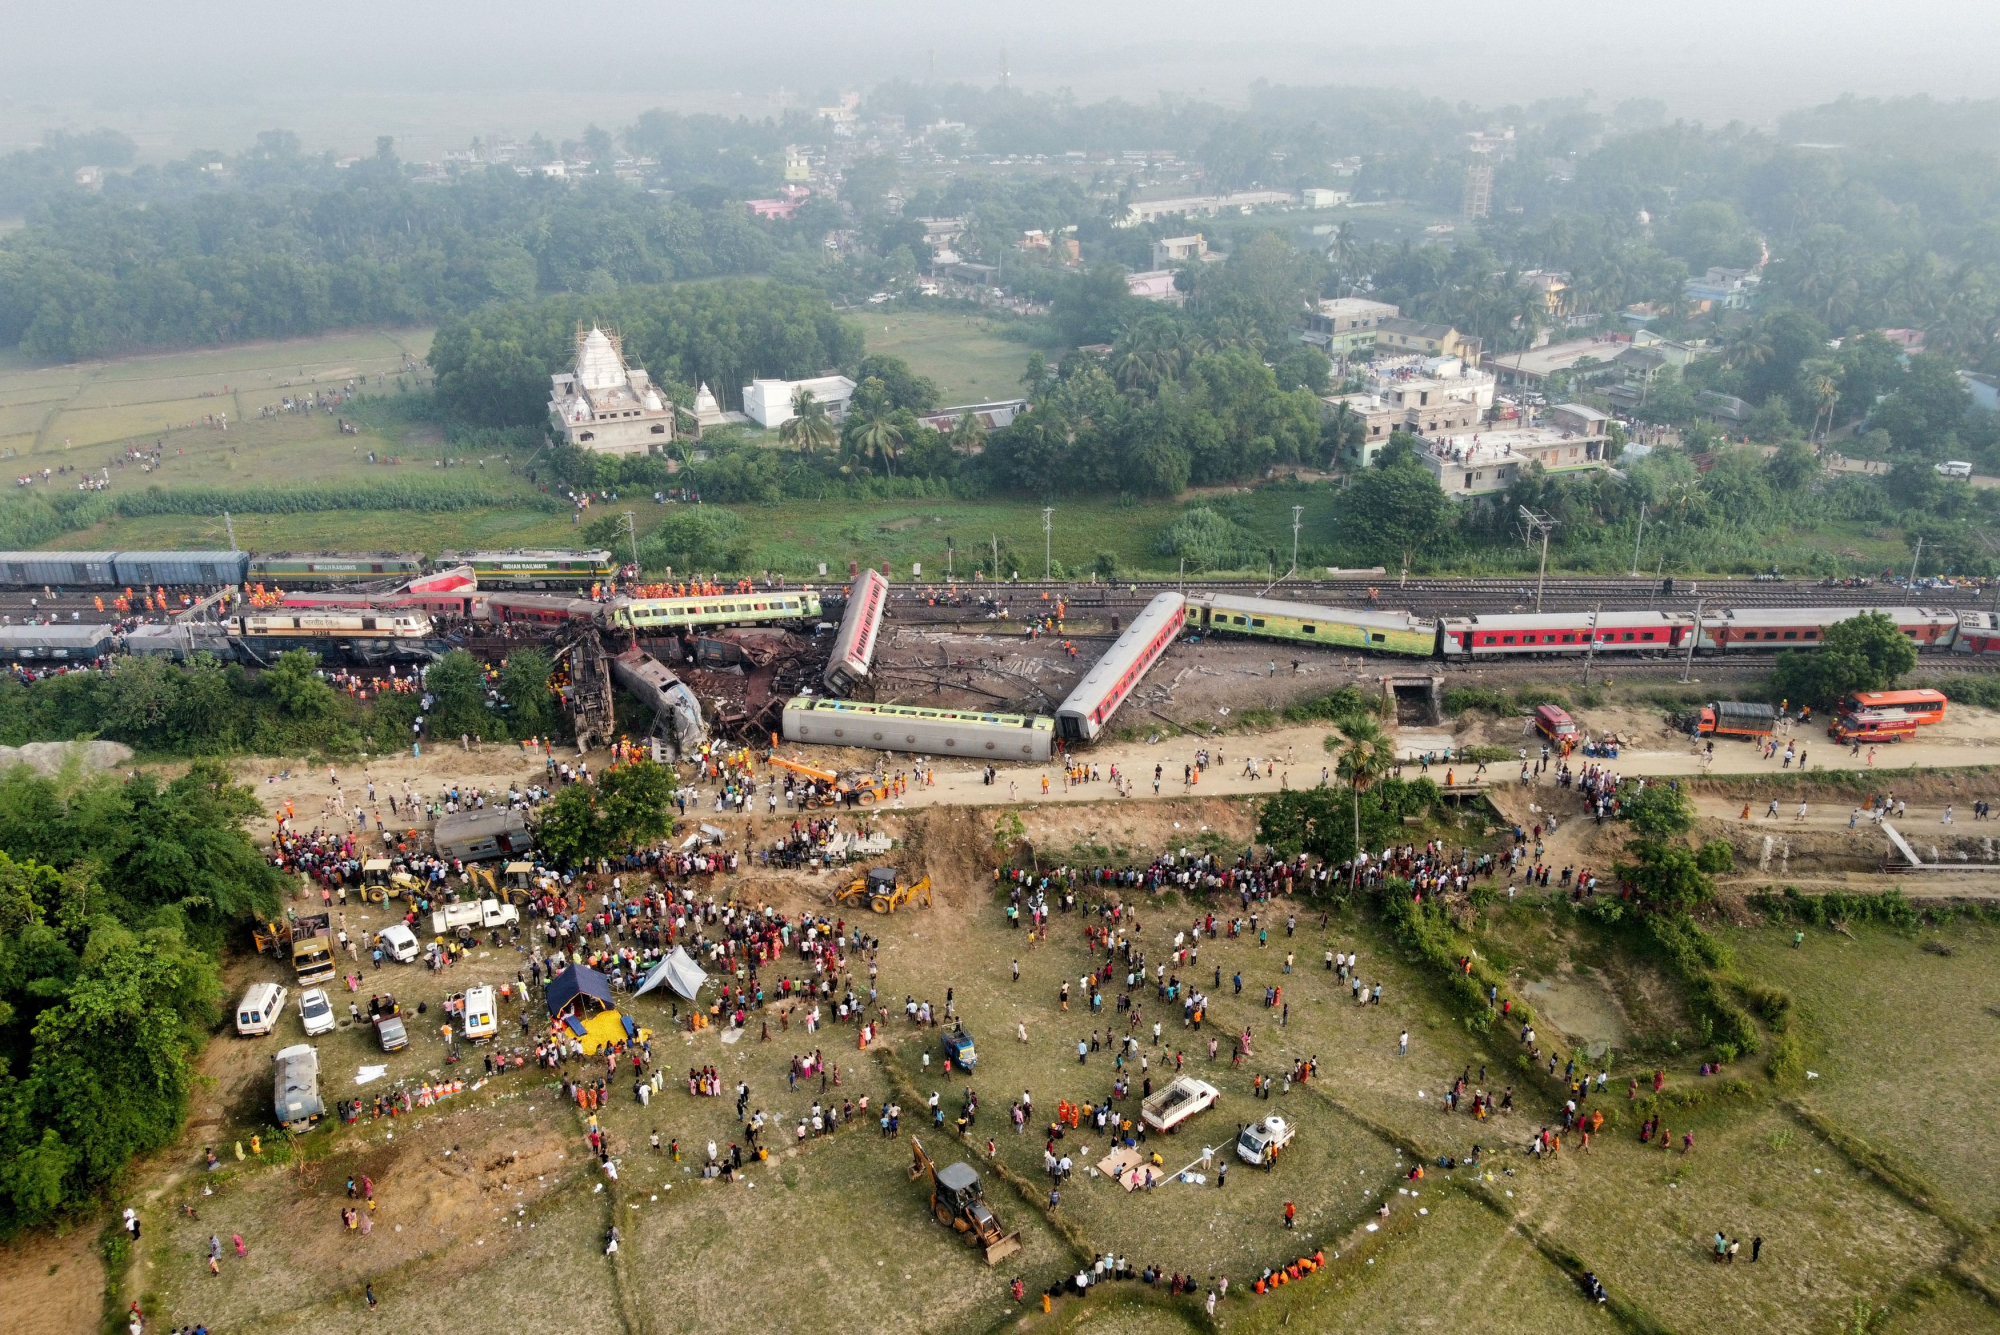 Σύγκρουση τρένων στην Ινδία: Φόβοι ότι θα αυξηθεί ο αριθμός των νεκρών - Λιγοστεύουν οι ελπίδες για επιζώντες